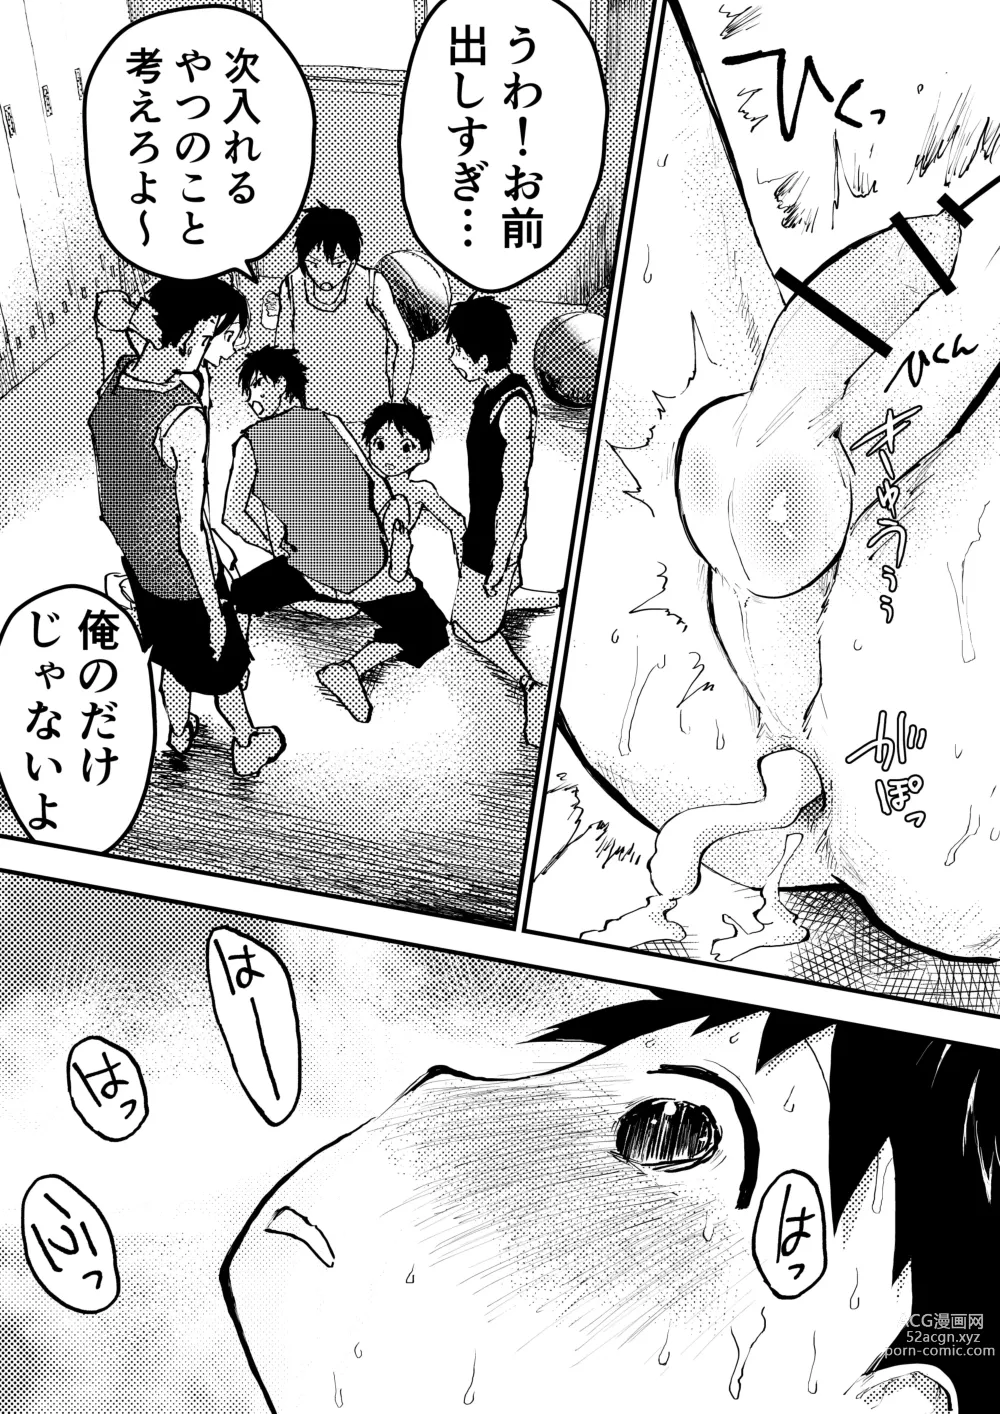 Page 35 of doujinshi Baske ga Heta dakara Shikata ga nai!